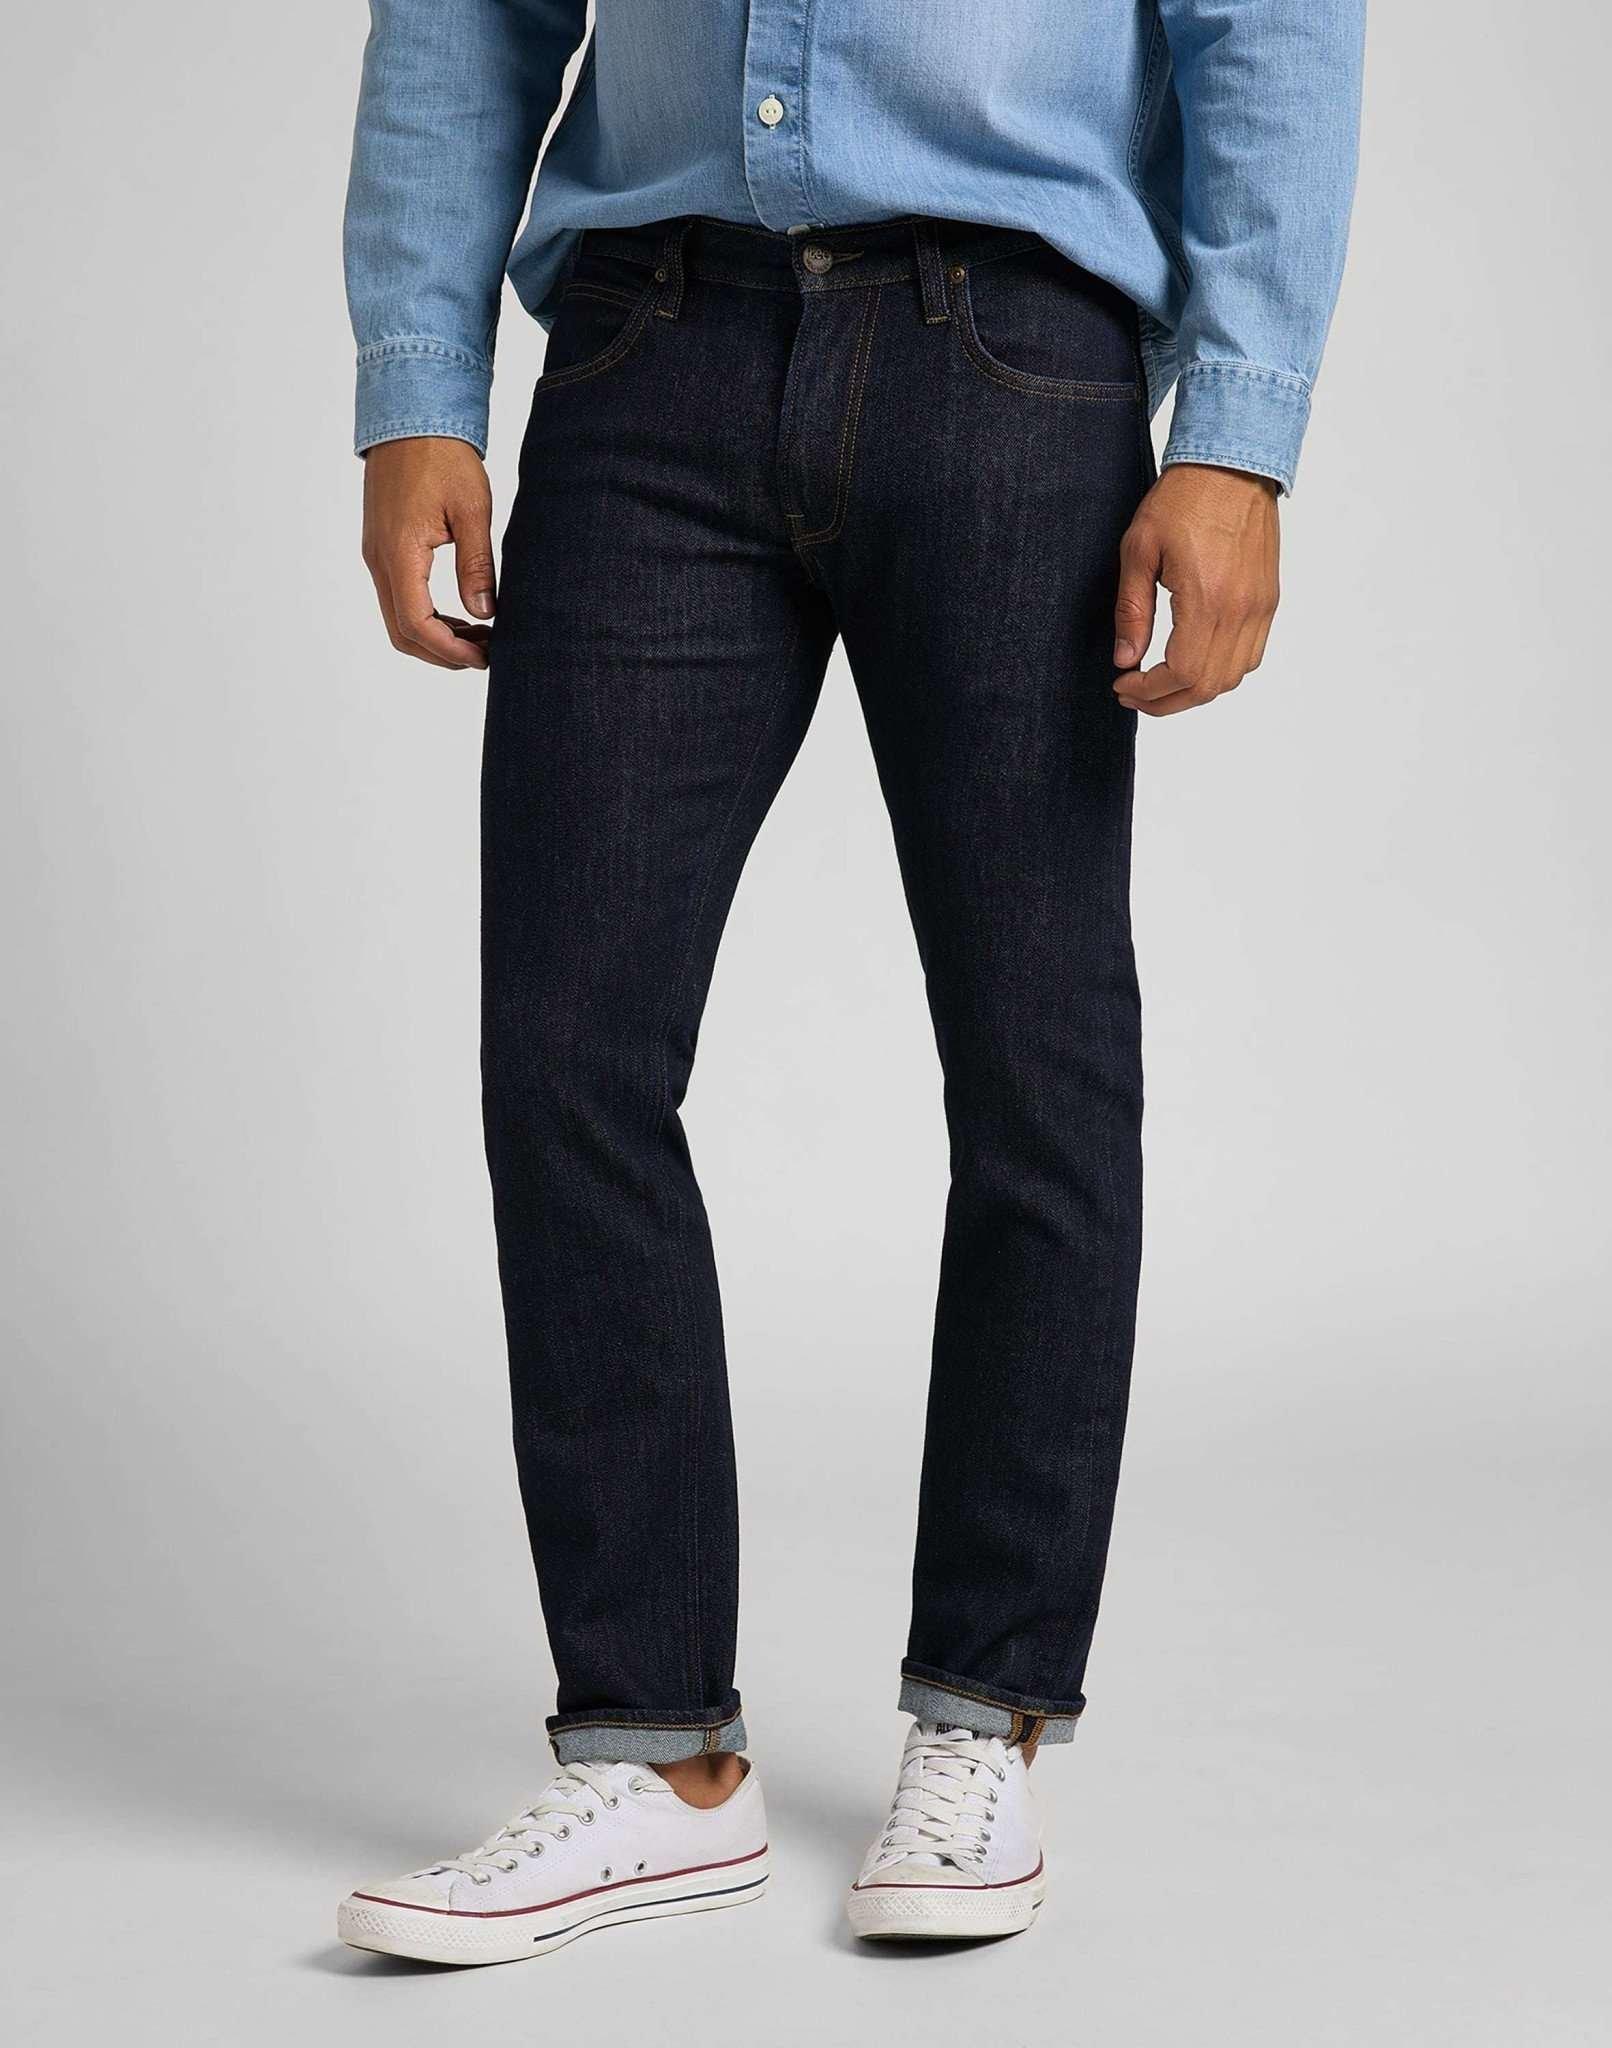 Jeans Straight Leg Daren Herren Blau Denim L32/W31 von Lee